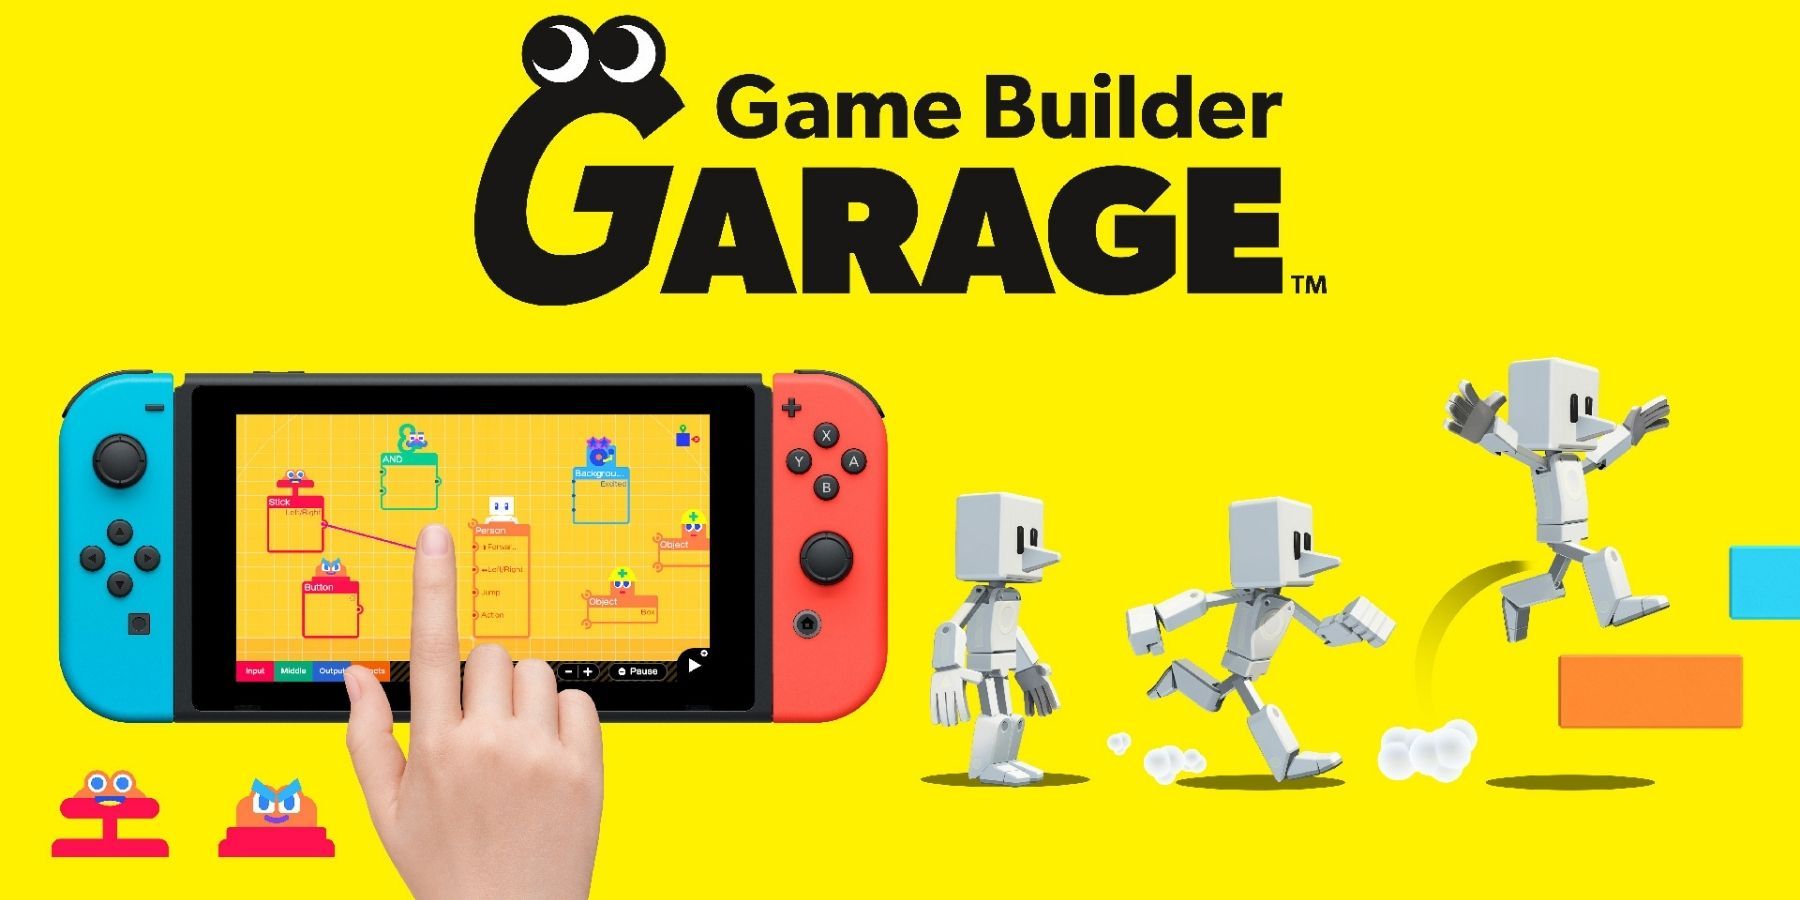 game builder garage logo and key art